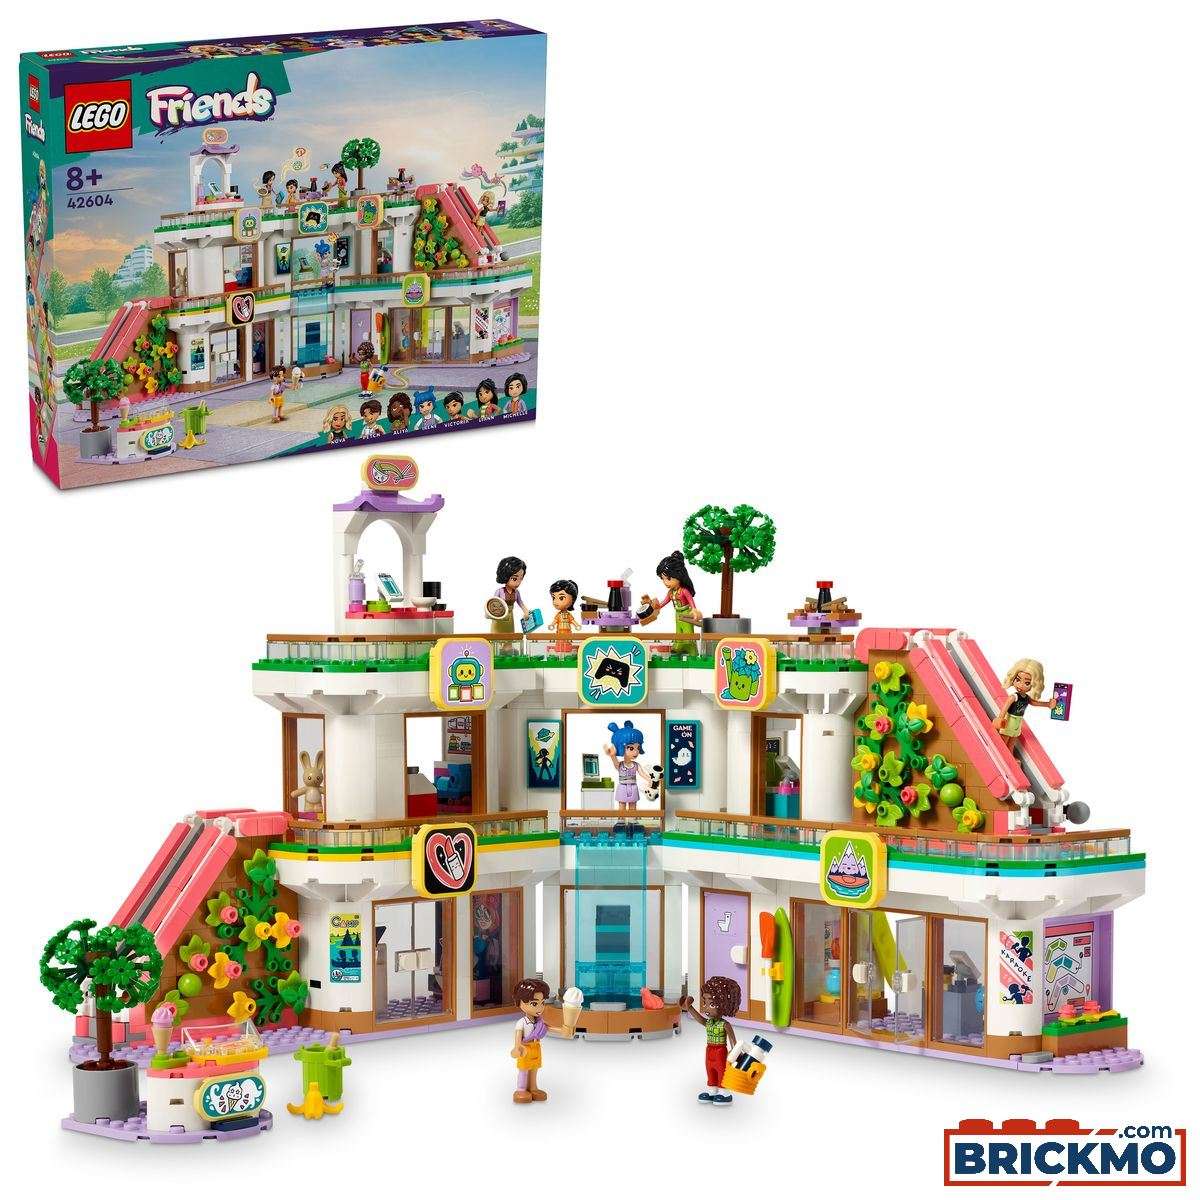 LEGO Friends 42604 Heartlake City bevásárlóközpont 42604